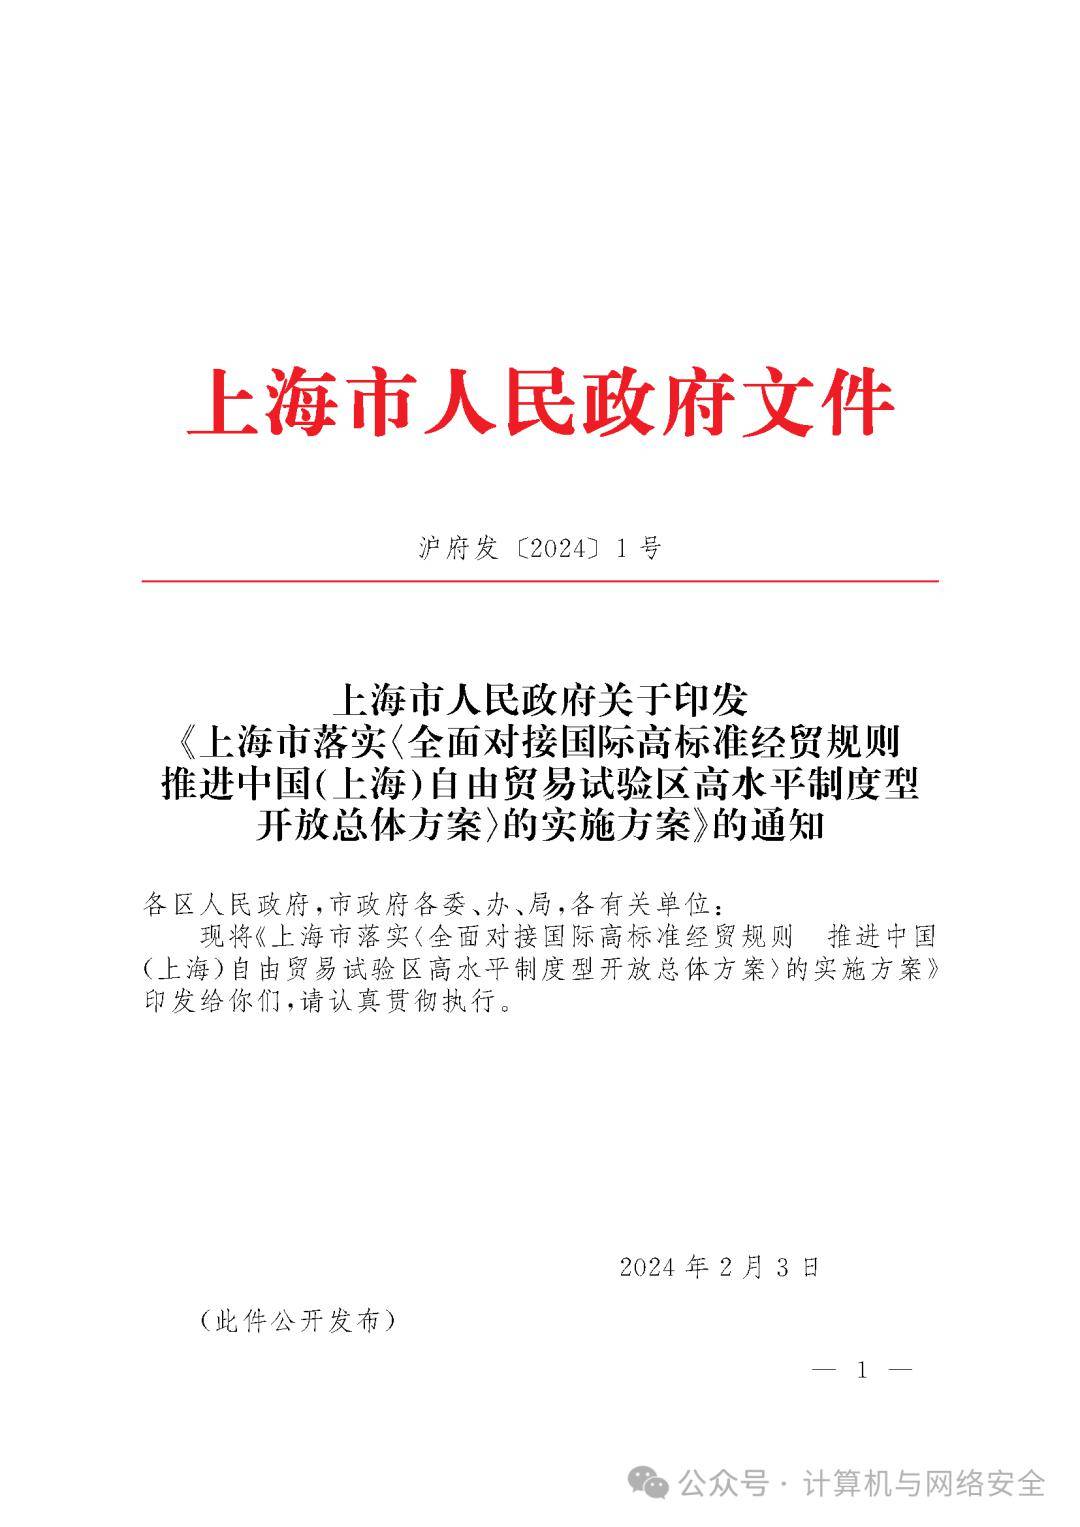 上海市落实《全面对接国际高标准经贸规则推进中国(上海)自由贸易试验